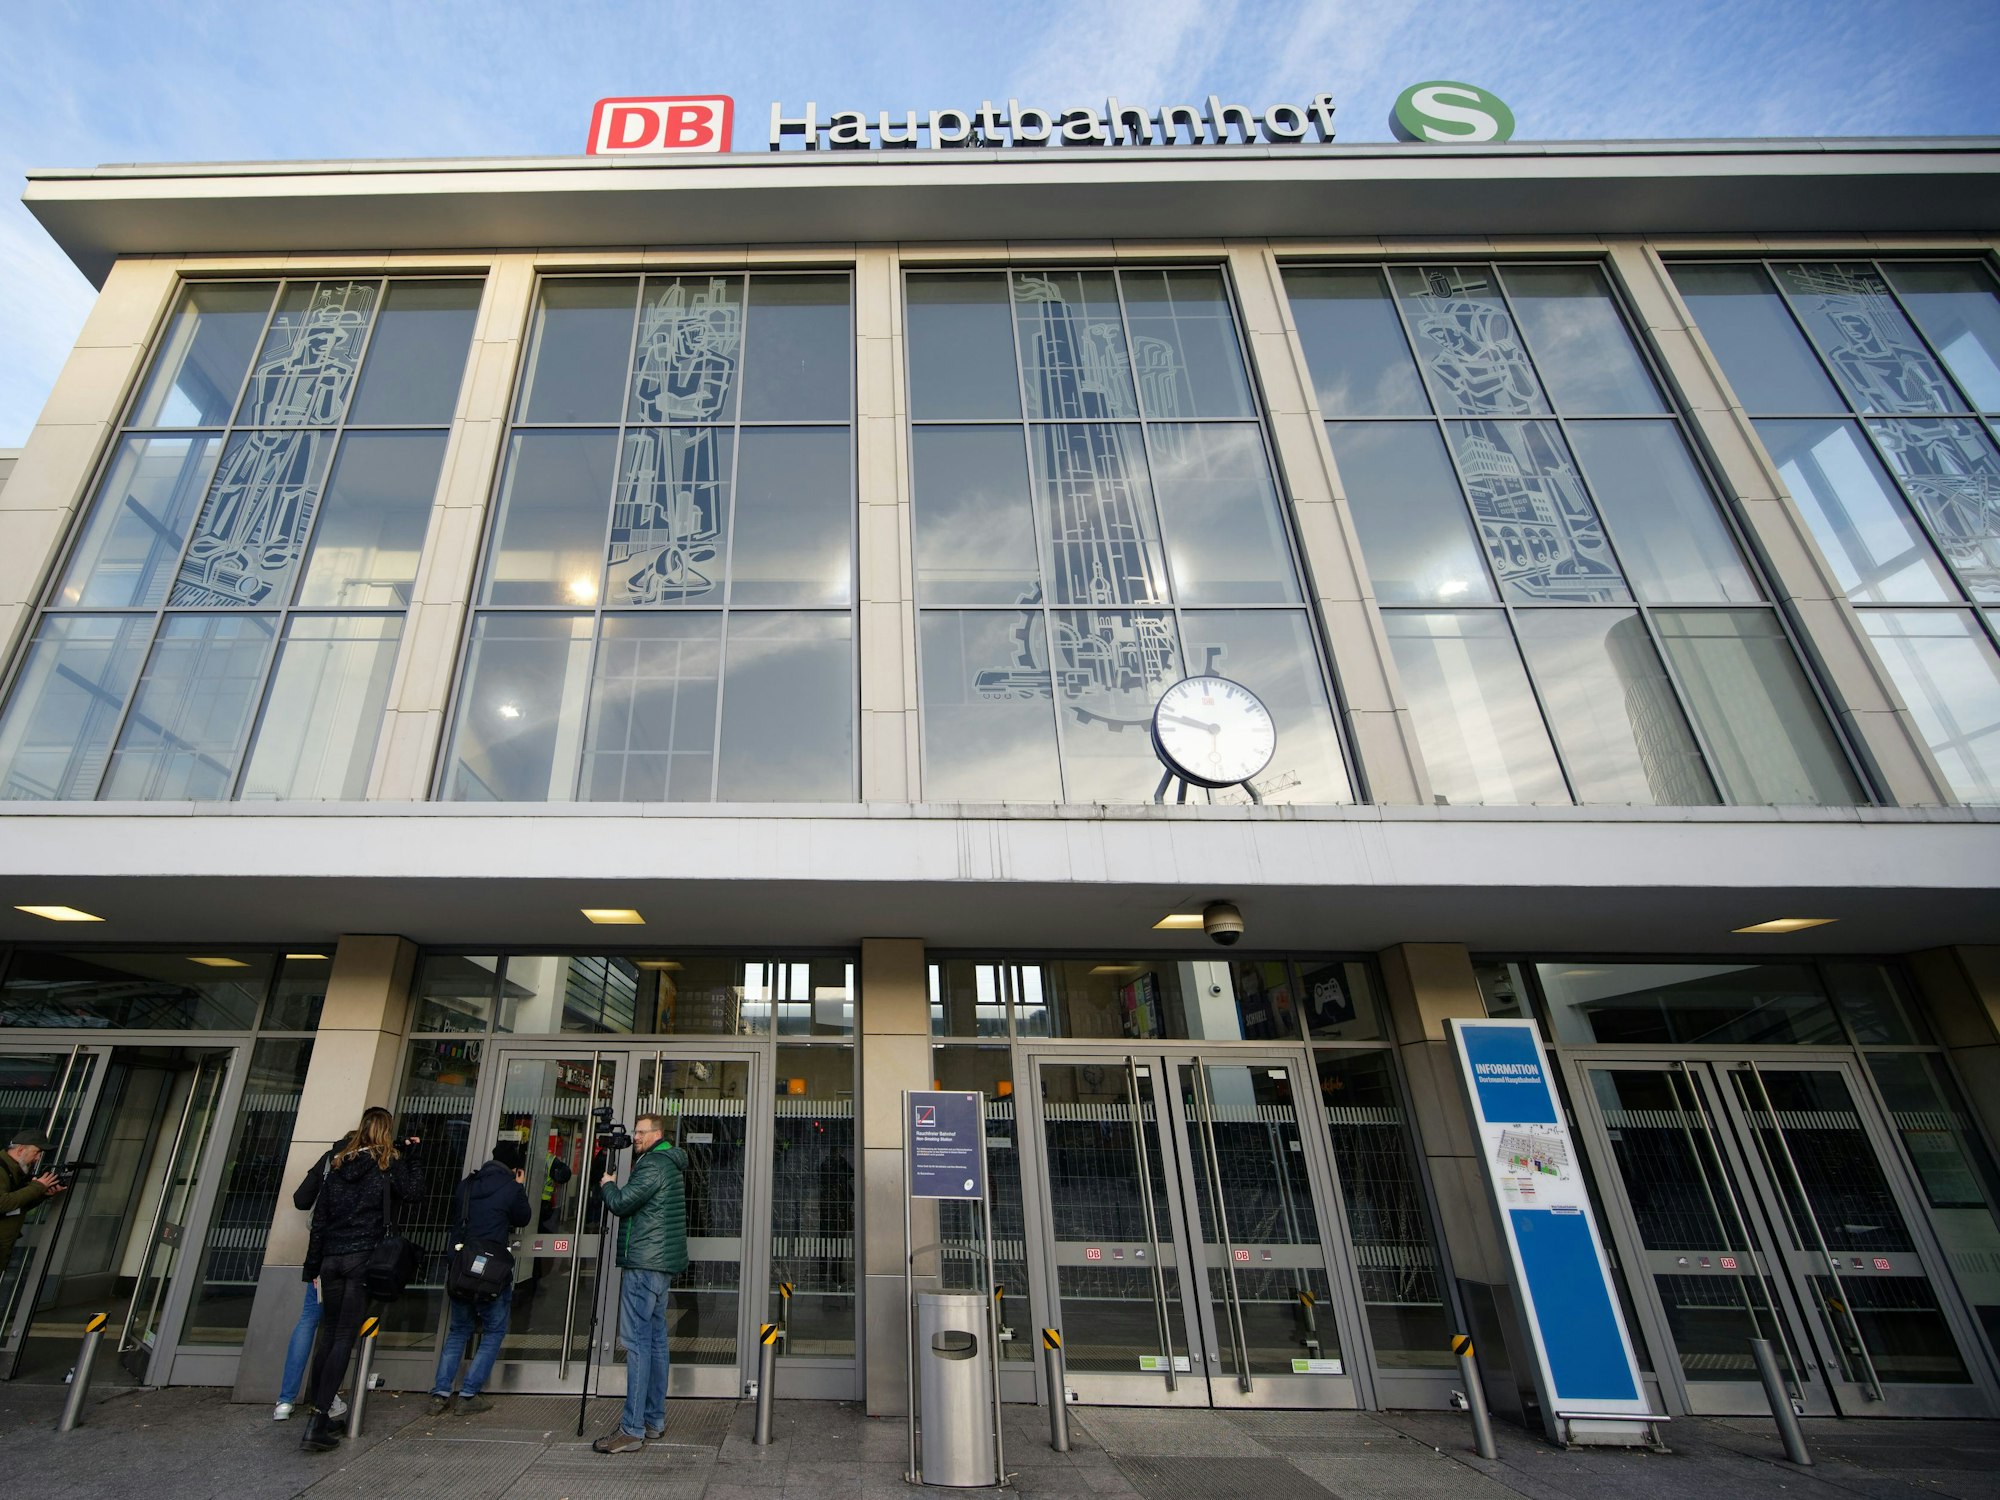 Journalisten stehen vor dem gesperrten Dortmunder Hauptbahnhof.